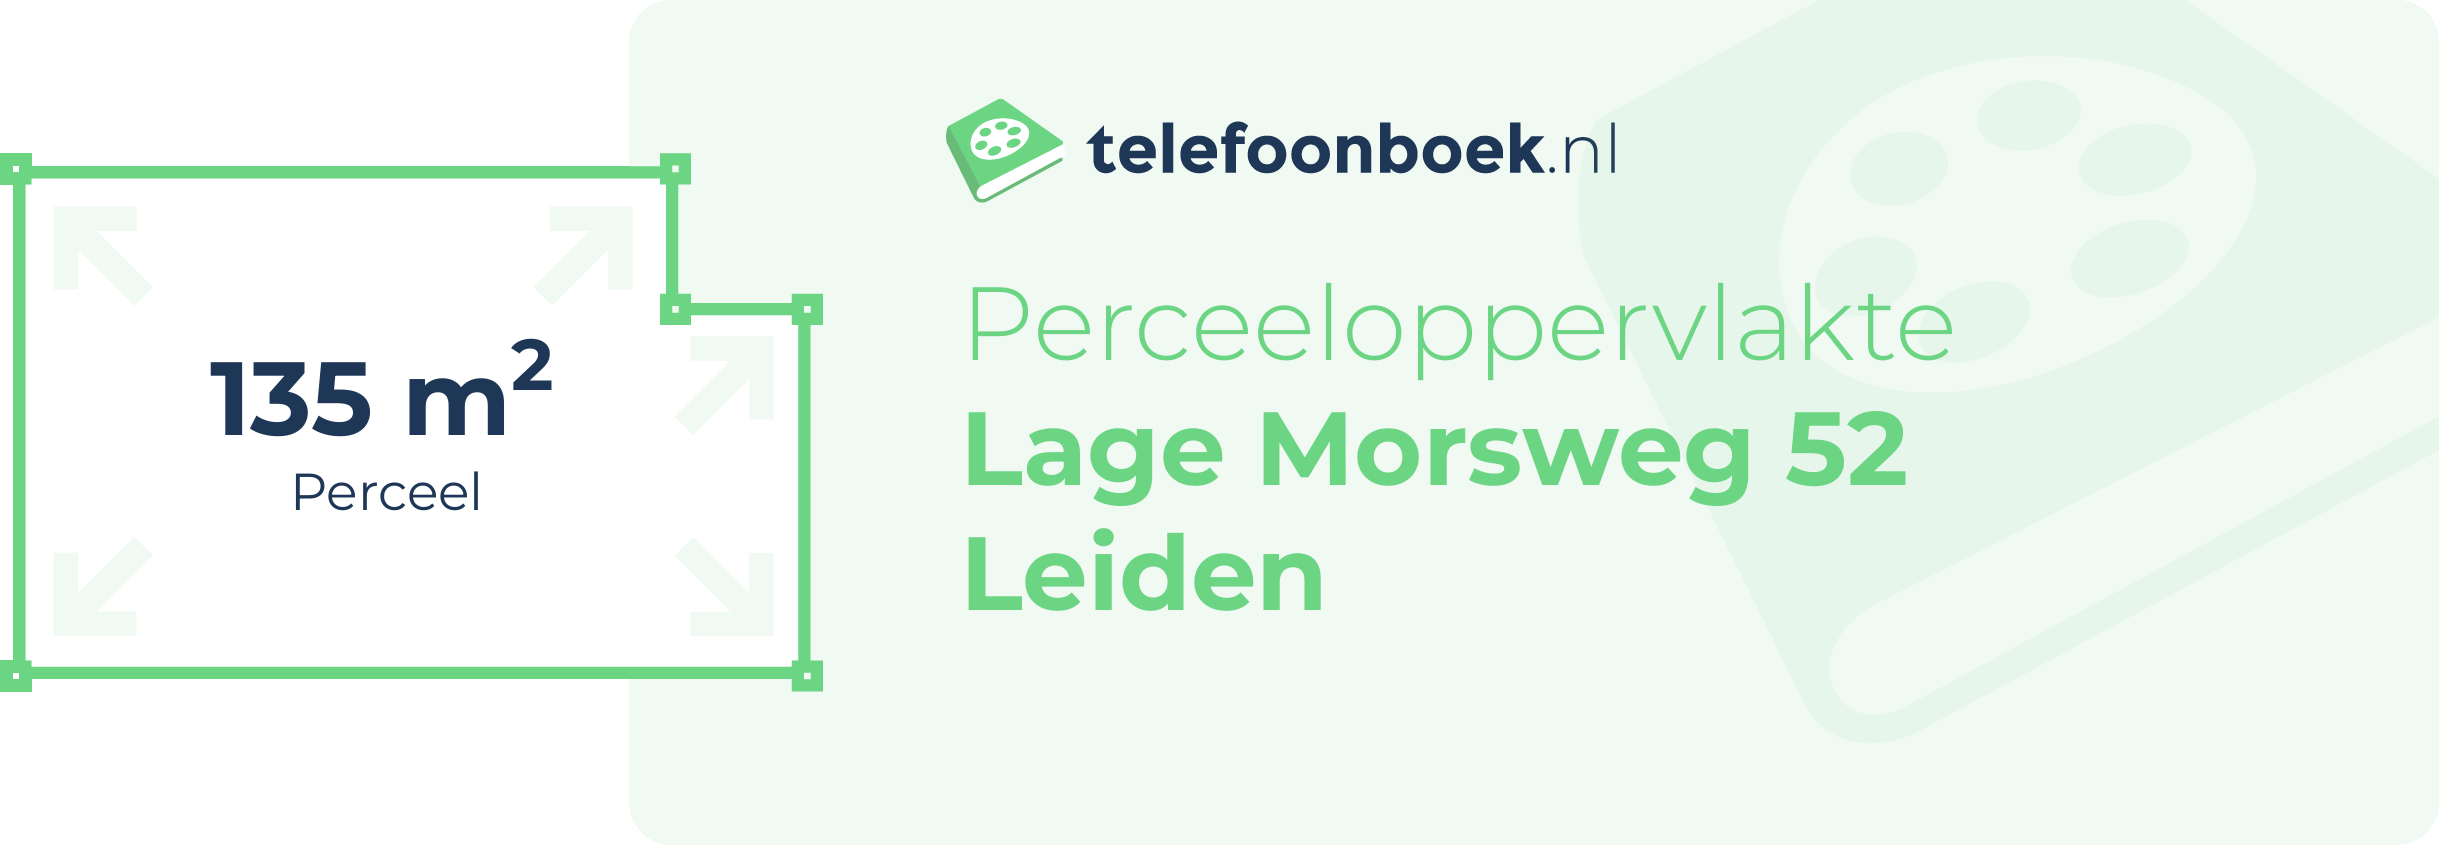 Perceeloppervlakte Lage Morsweg 52 Leiden